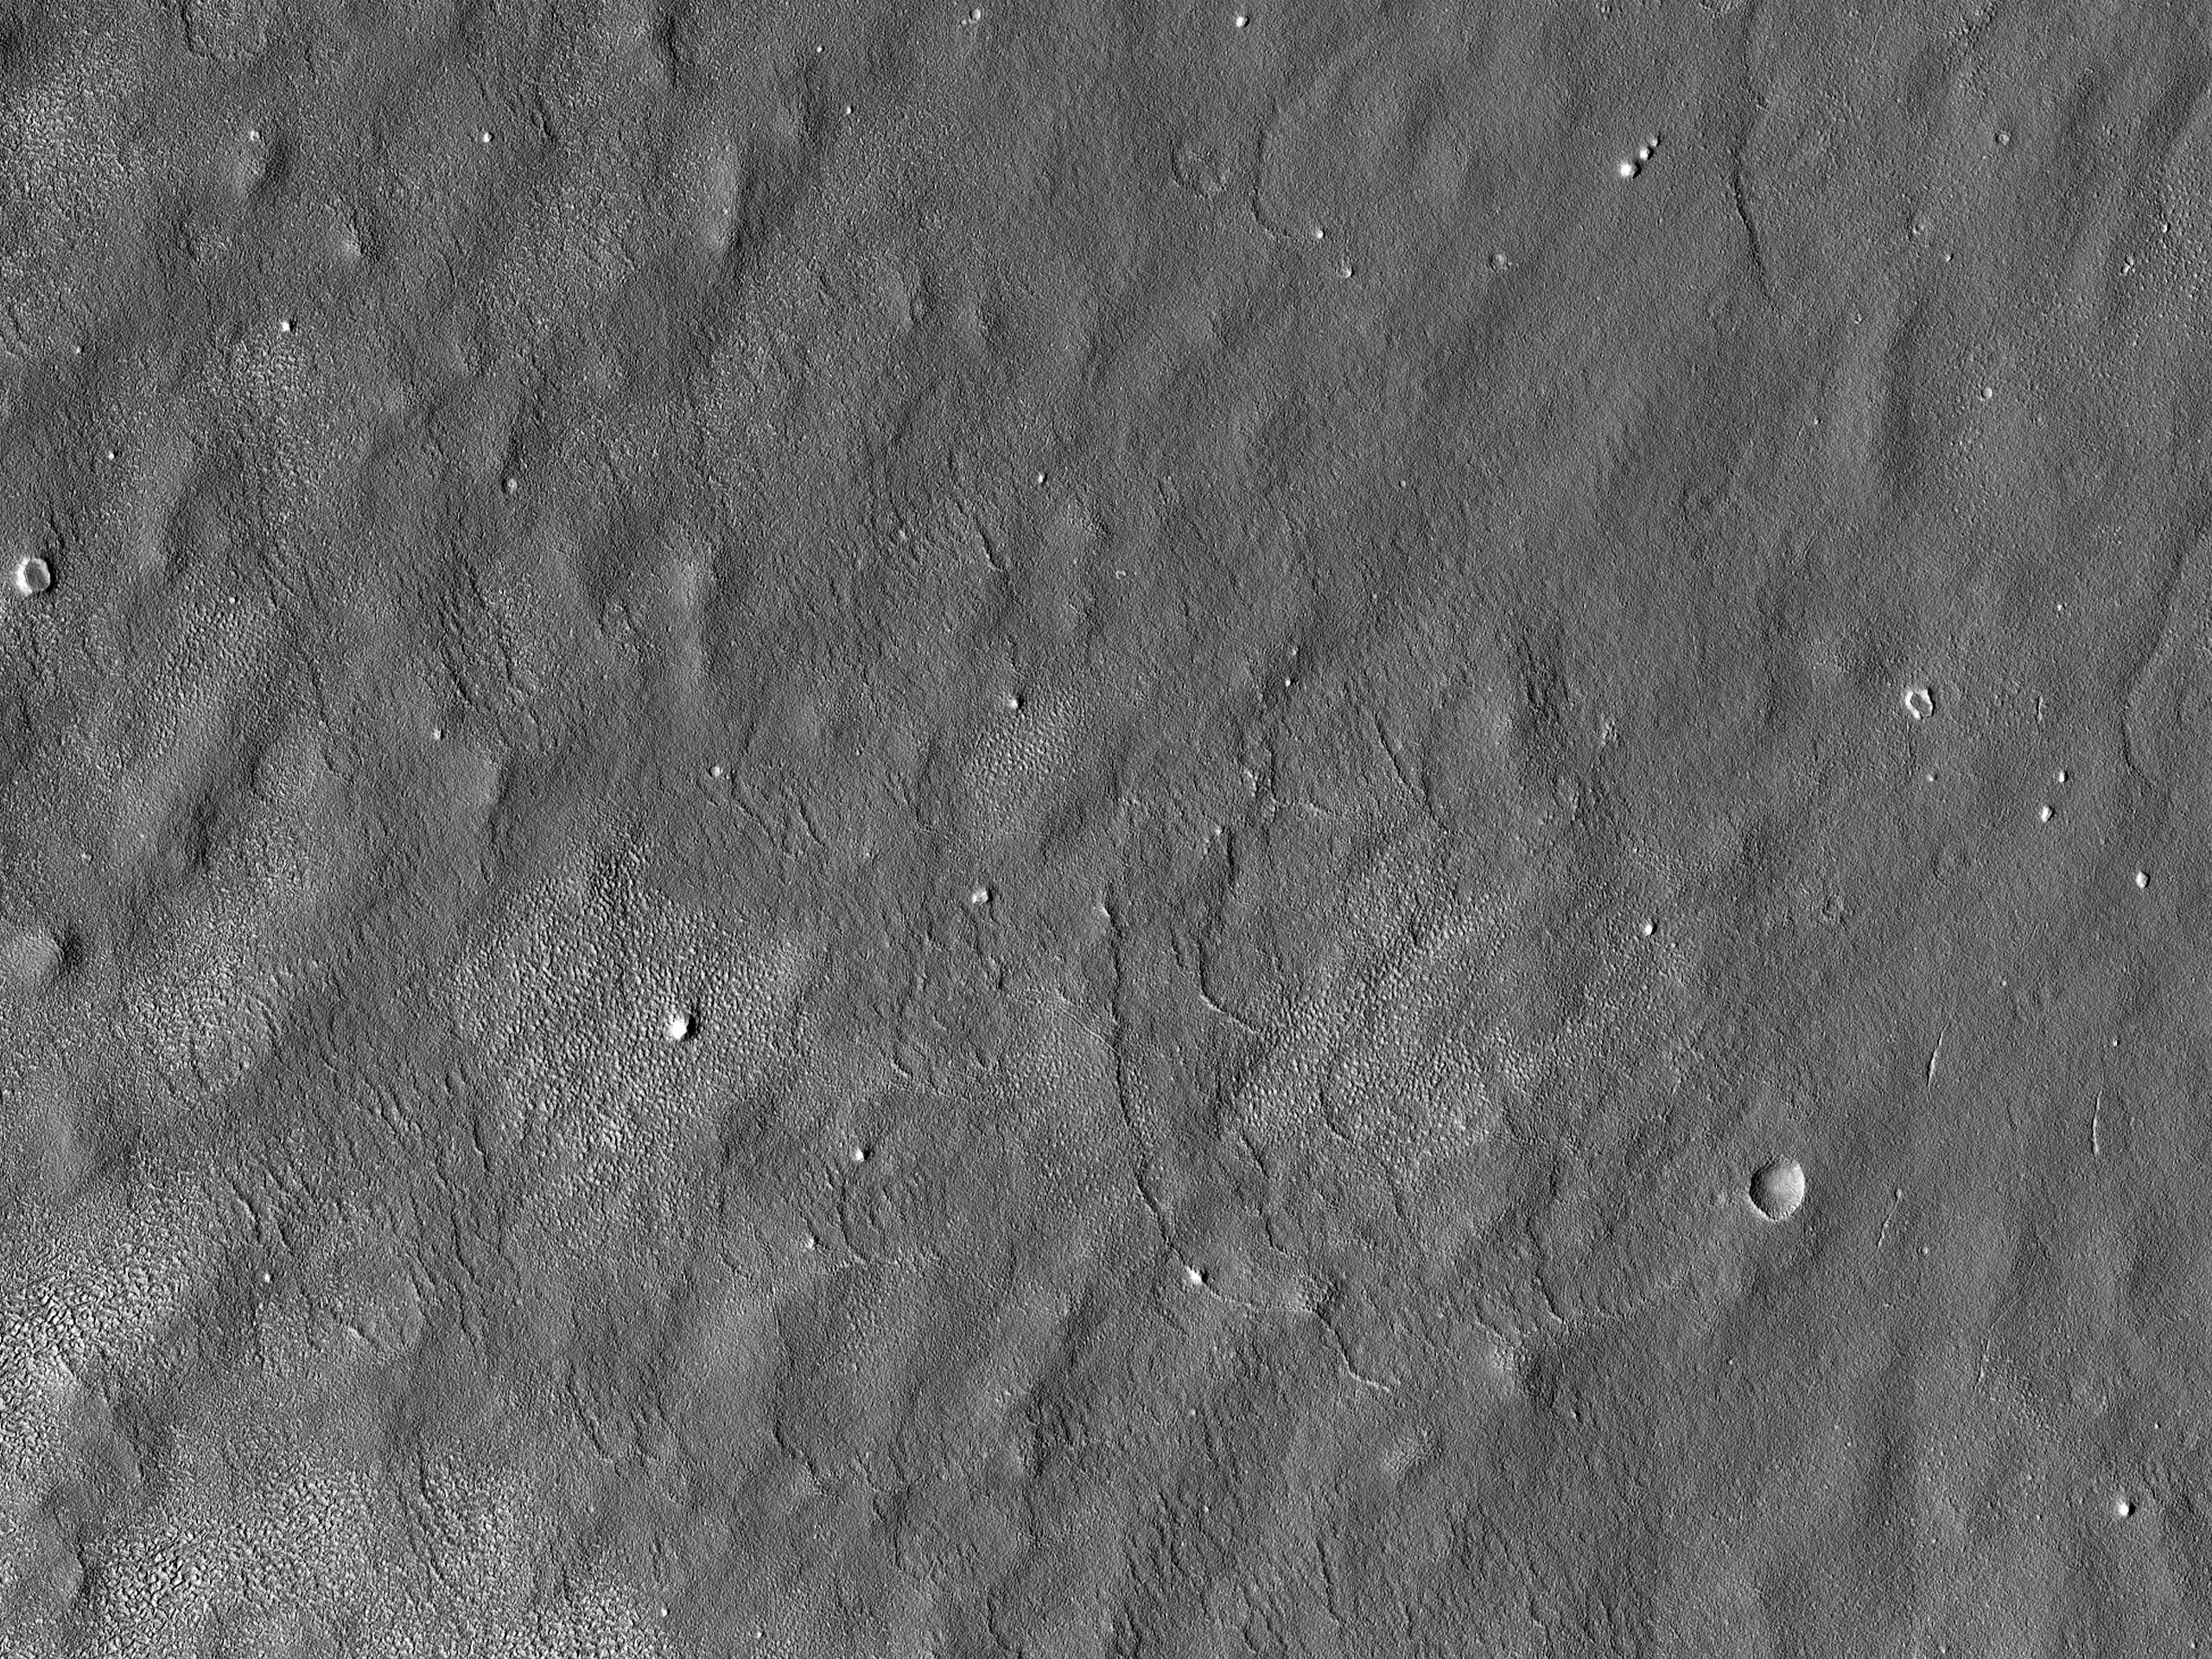 Möjlig landnings plats för "Red Dragon" i Arcadia Planitia